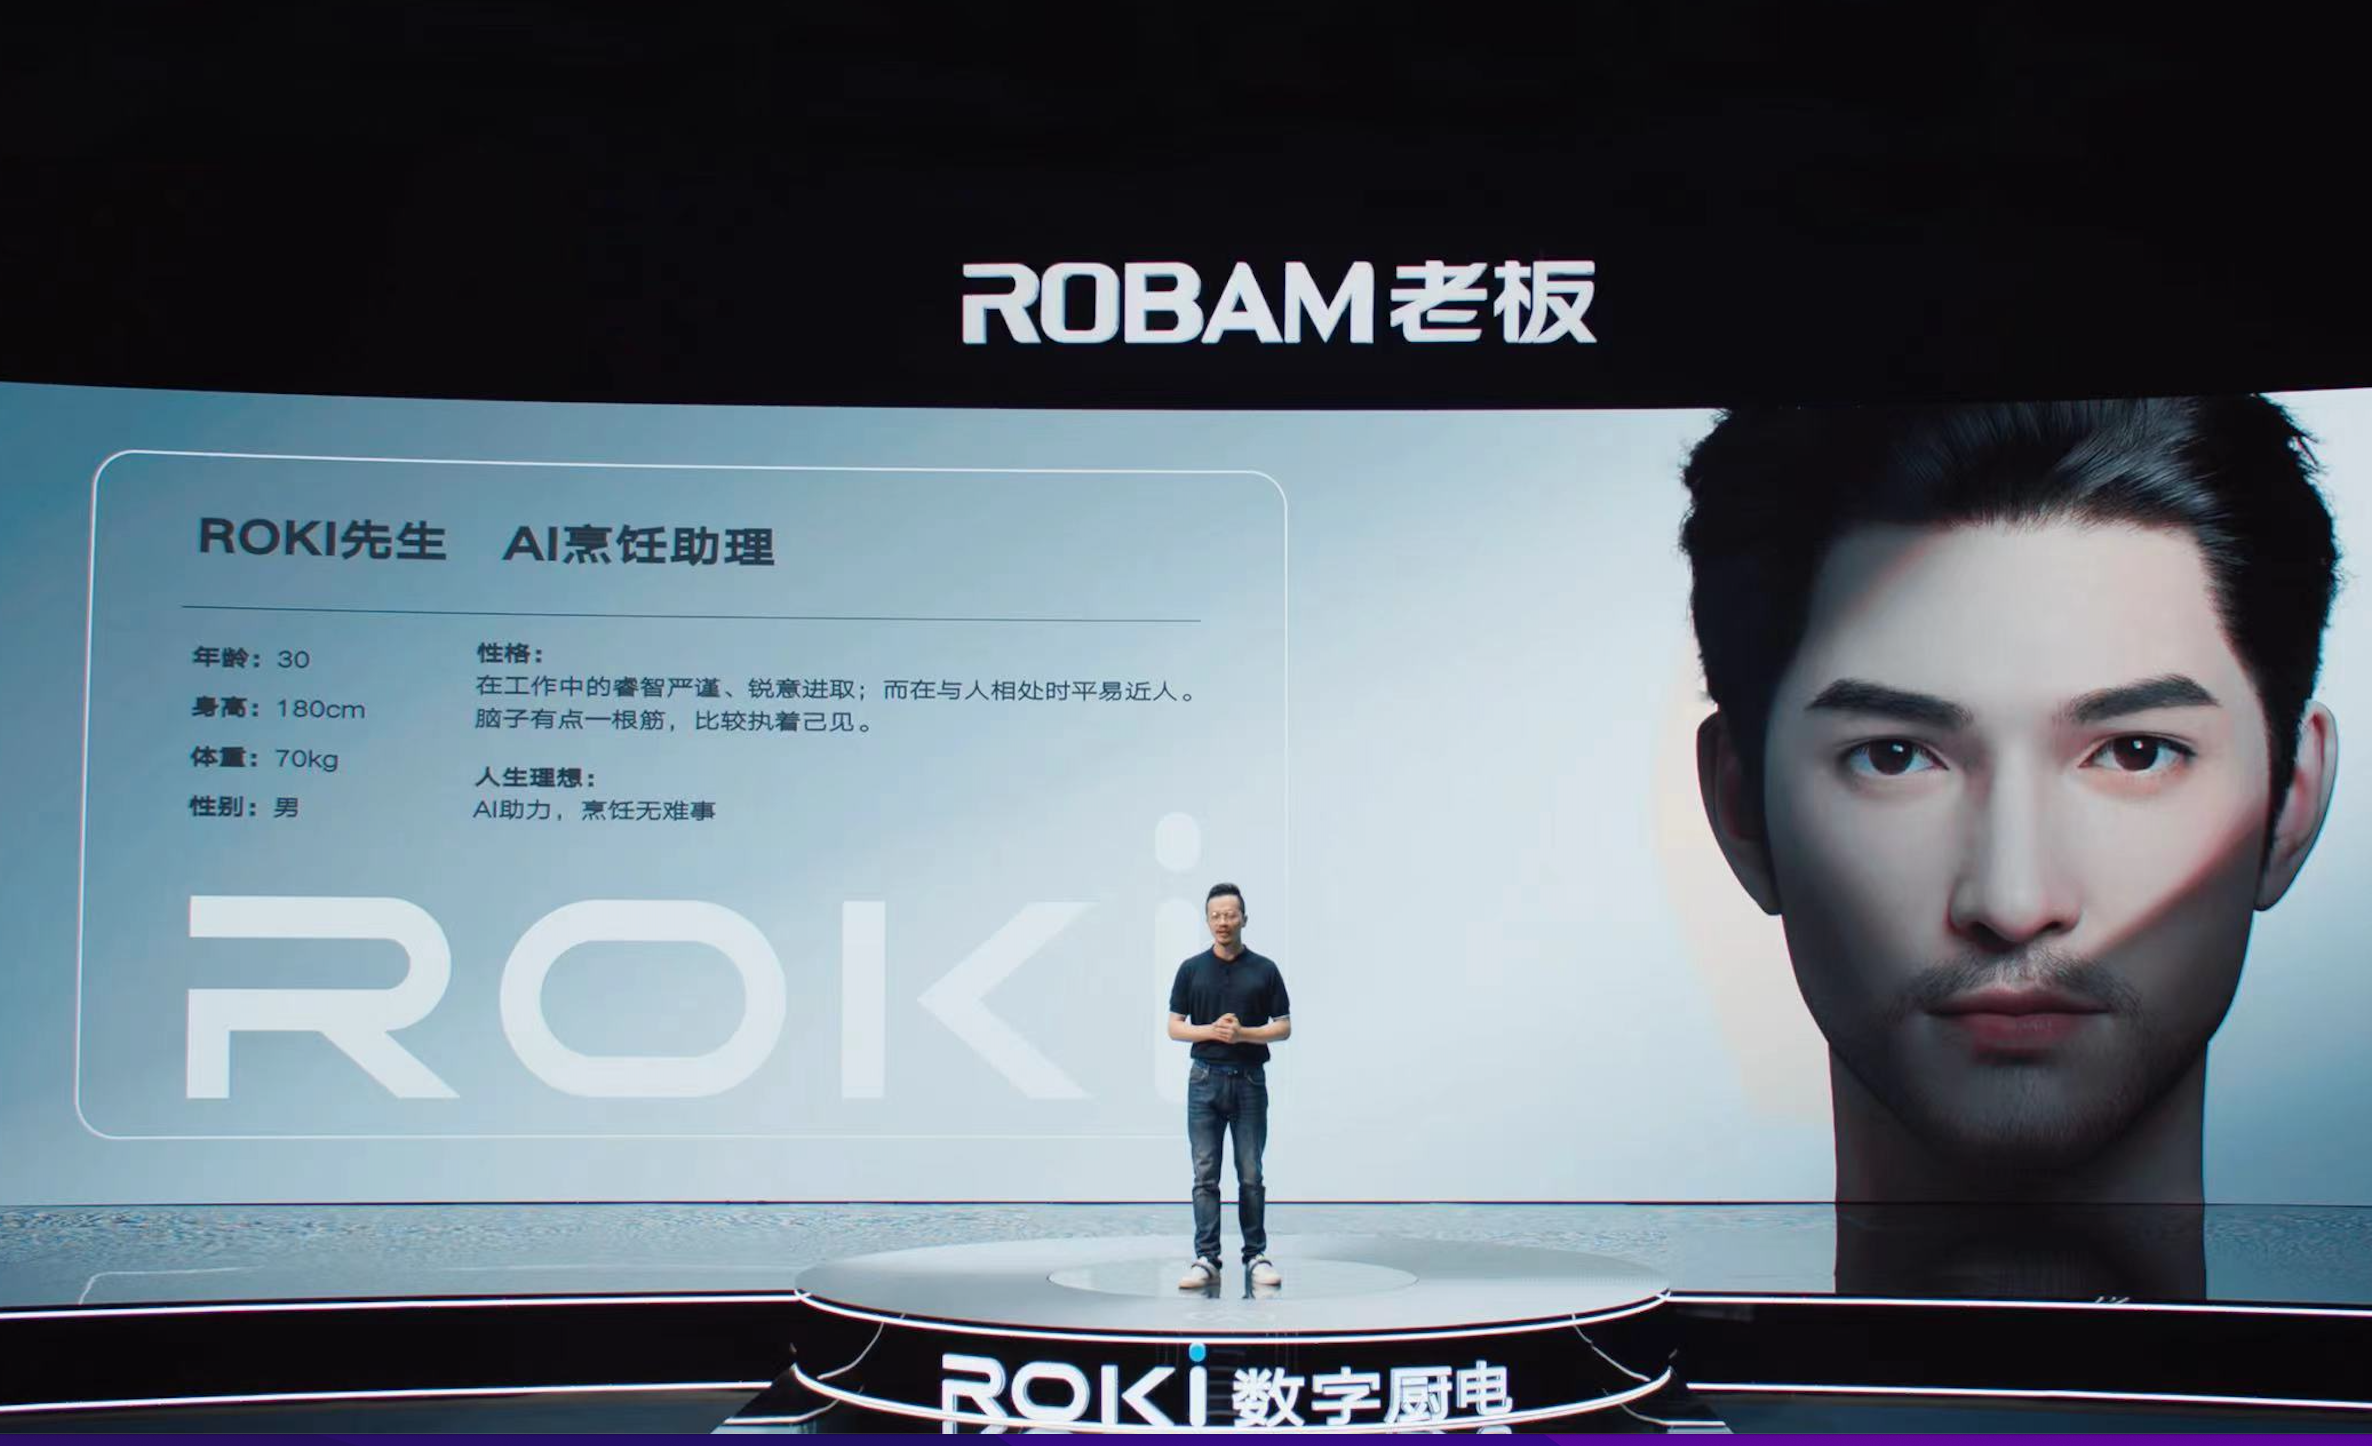 老板电器发布“新物种”ROKI数字厨电 全球首个AI烹饪助理C位出道